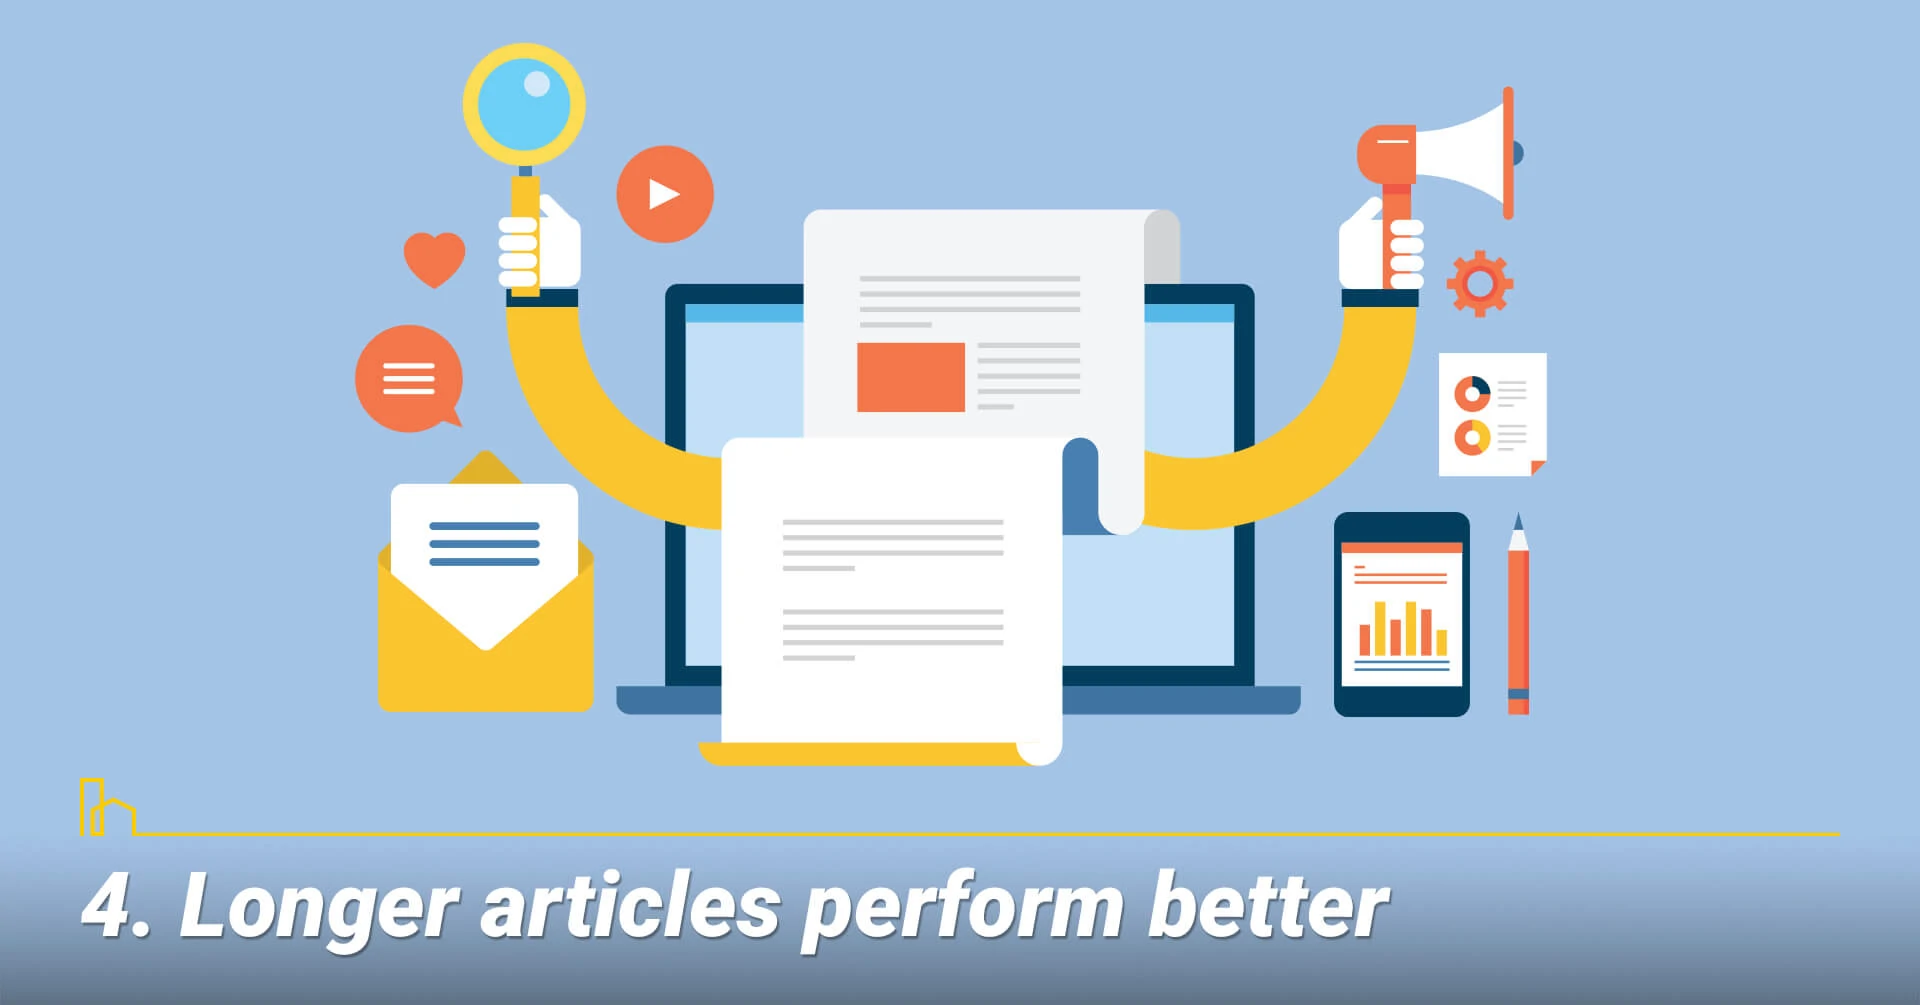 Longer articles perform better, write longer article for longer engagement